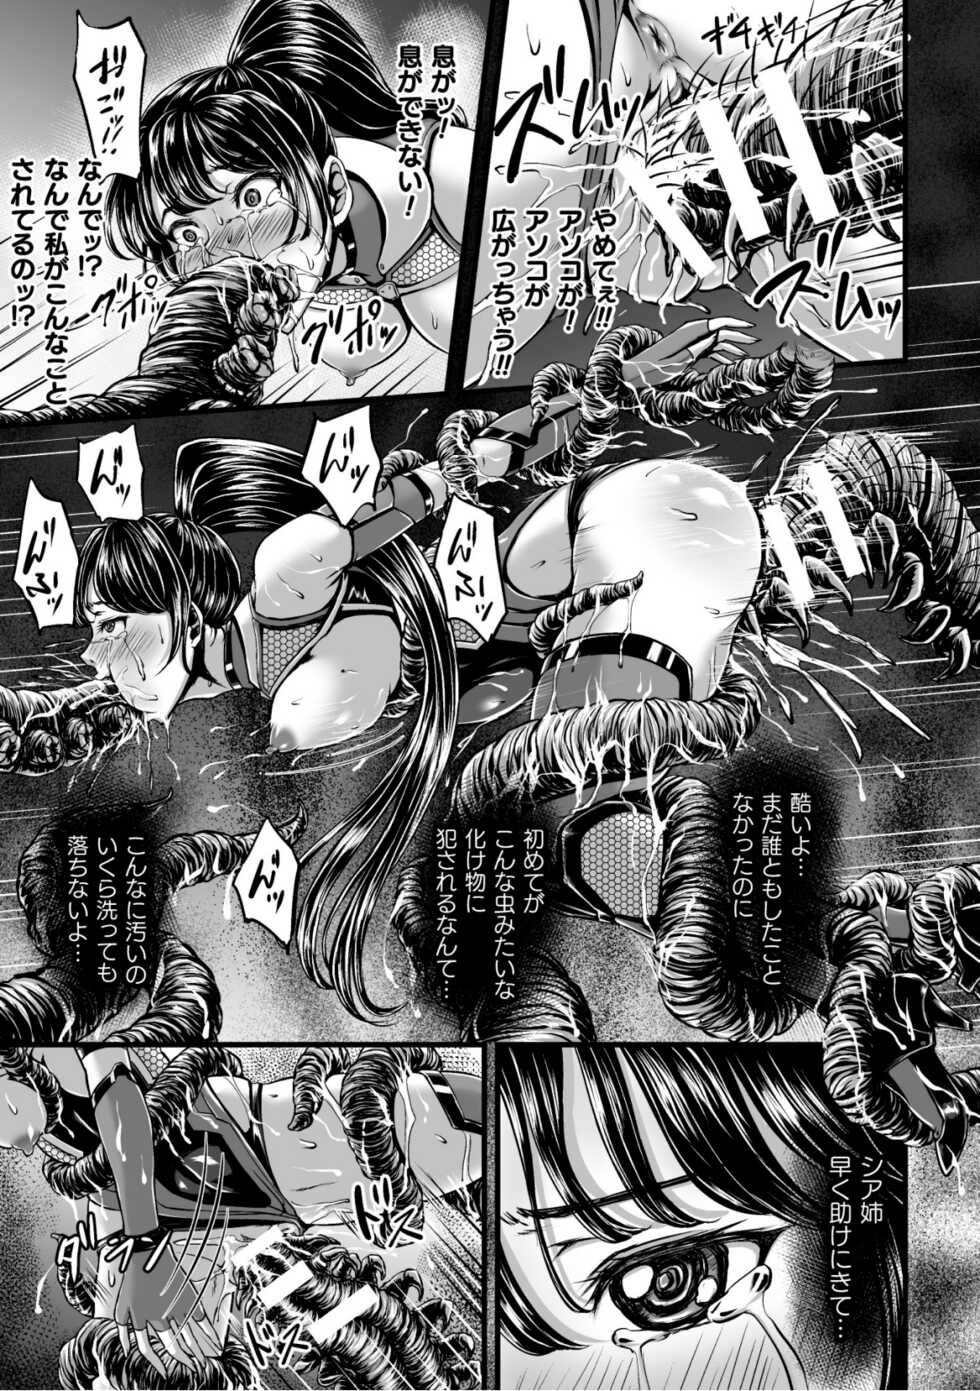 [yuyu] Kangoku Tentacle Battleship Episode 1 - Page 19